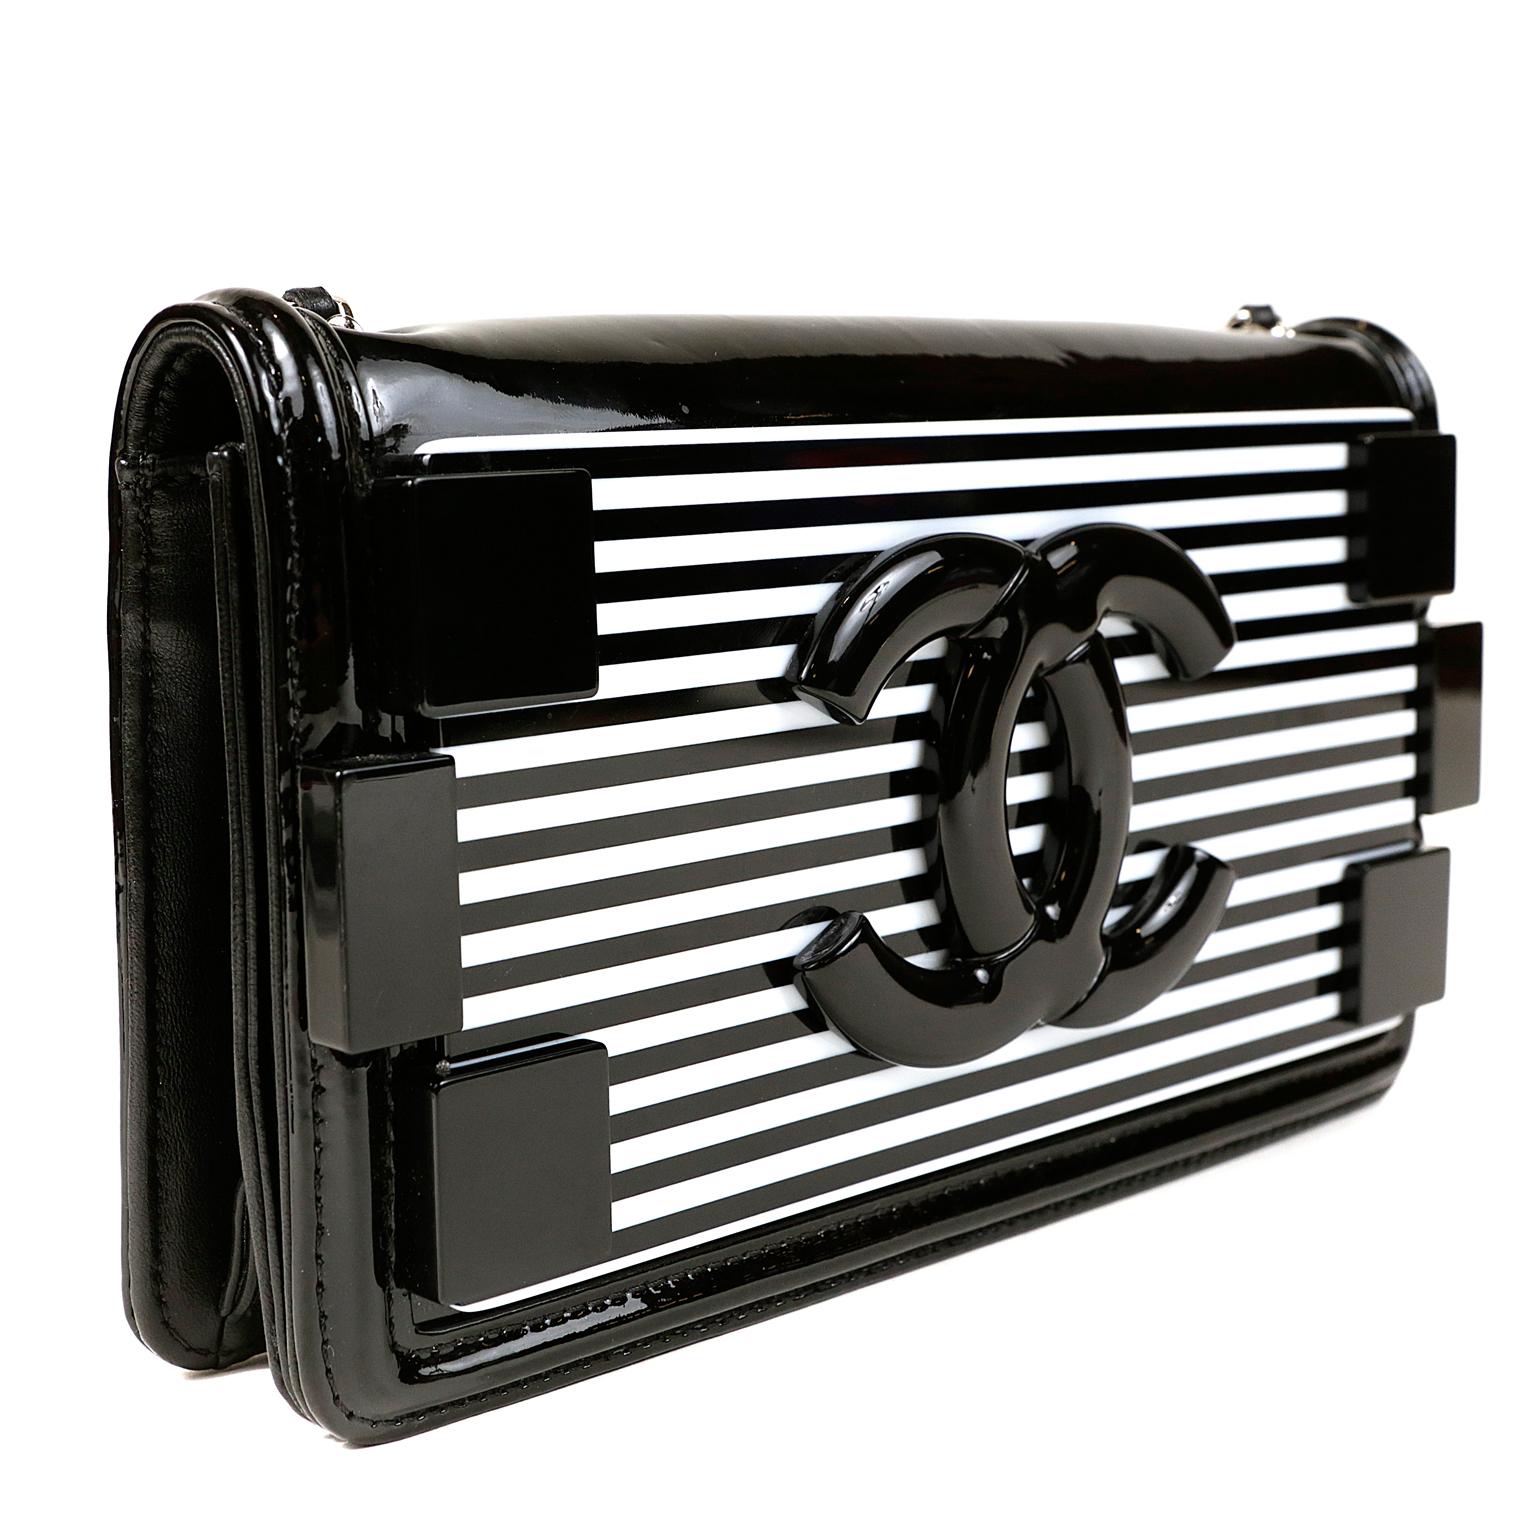 black and white striped purse